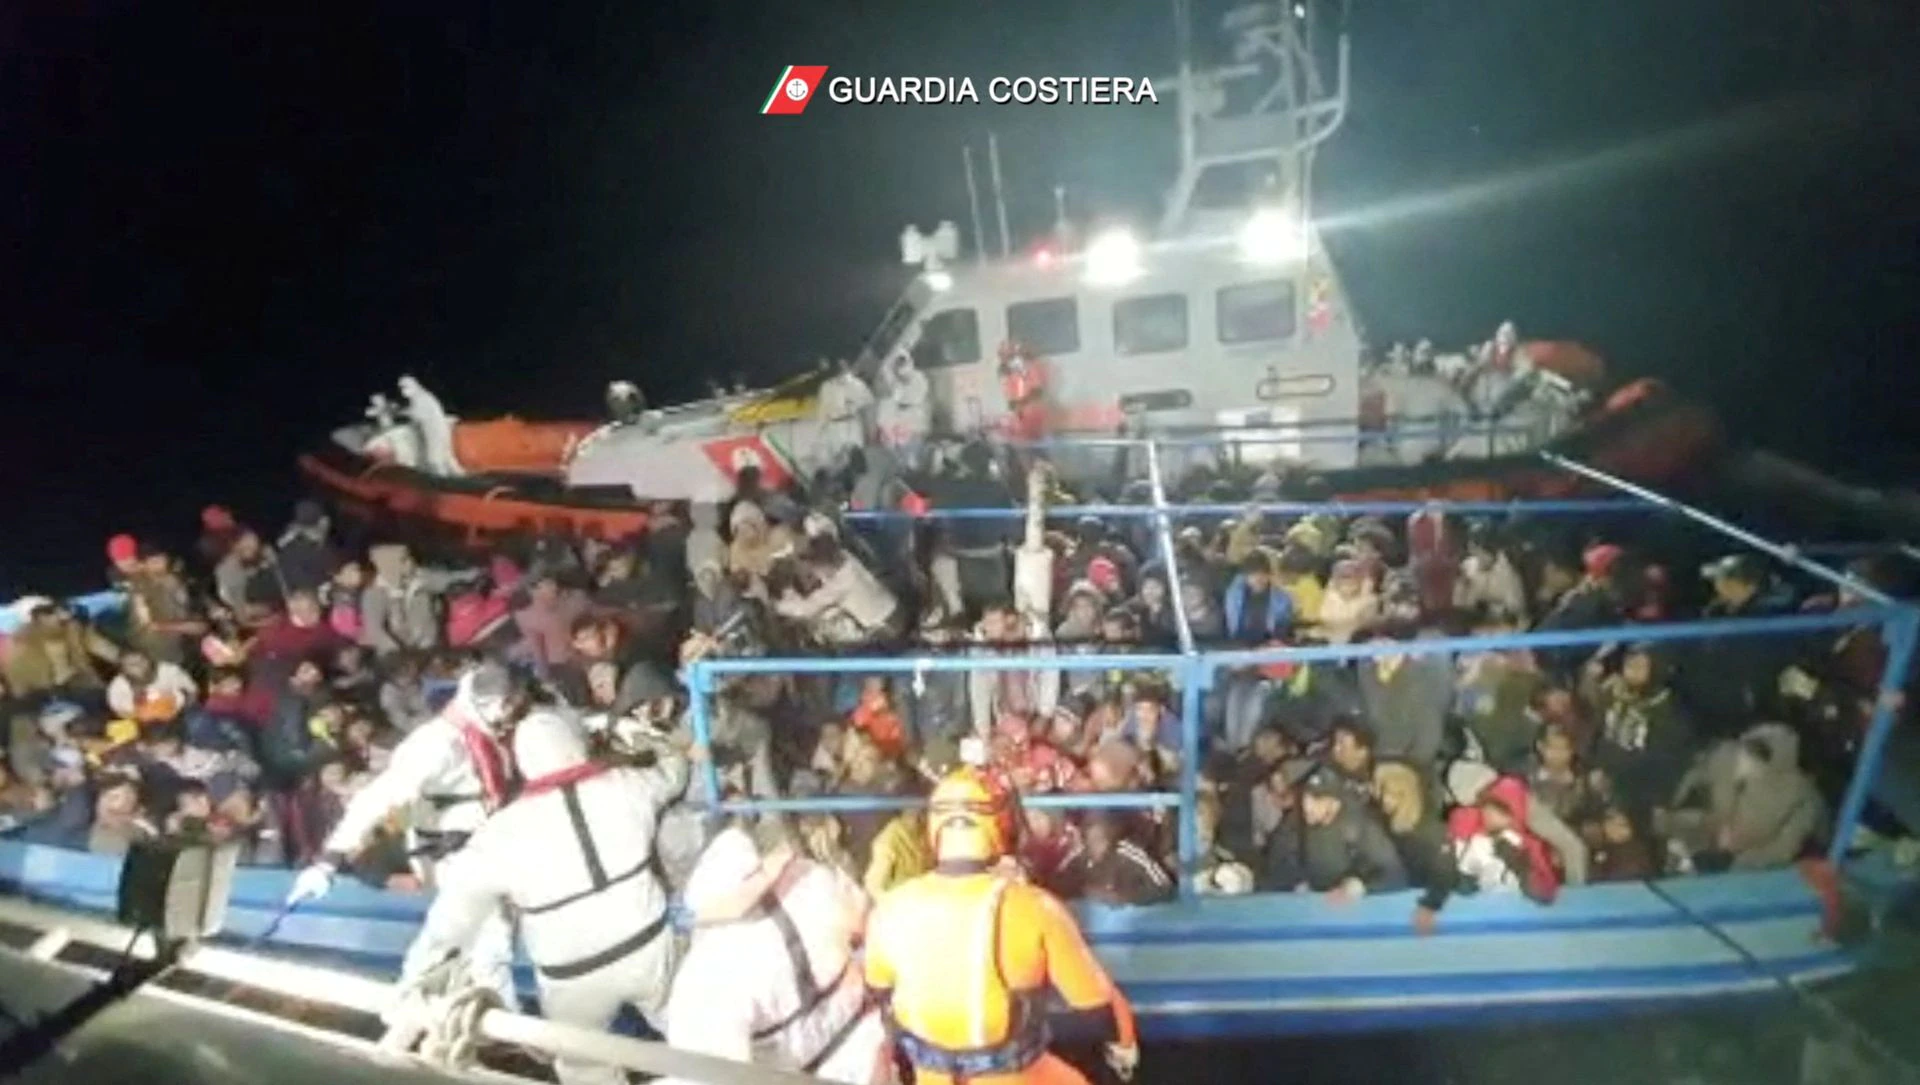 ناروے کا بحیرہء روم سے بچائے جانے والے مسافروں کو مدد دینے سے انکار